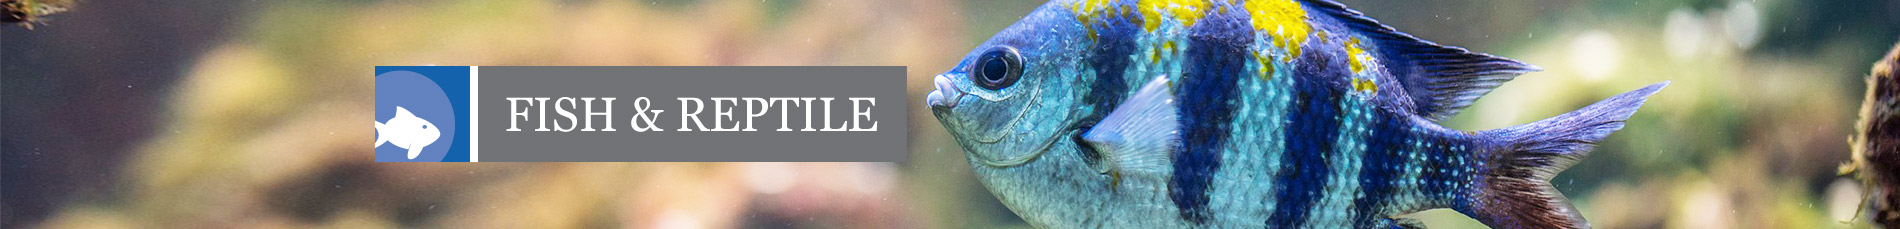 Fish & Reptile Banner